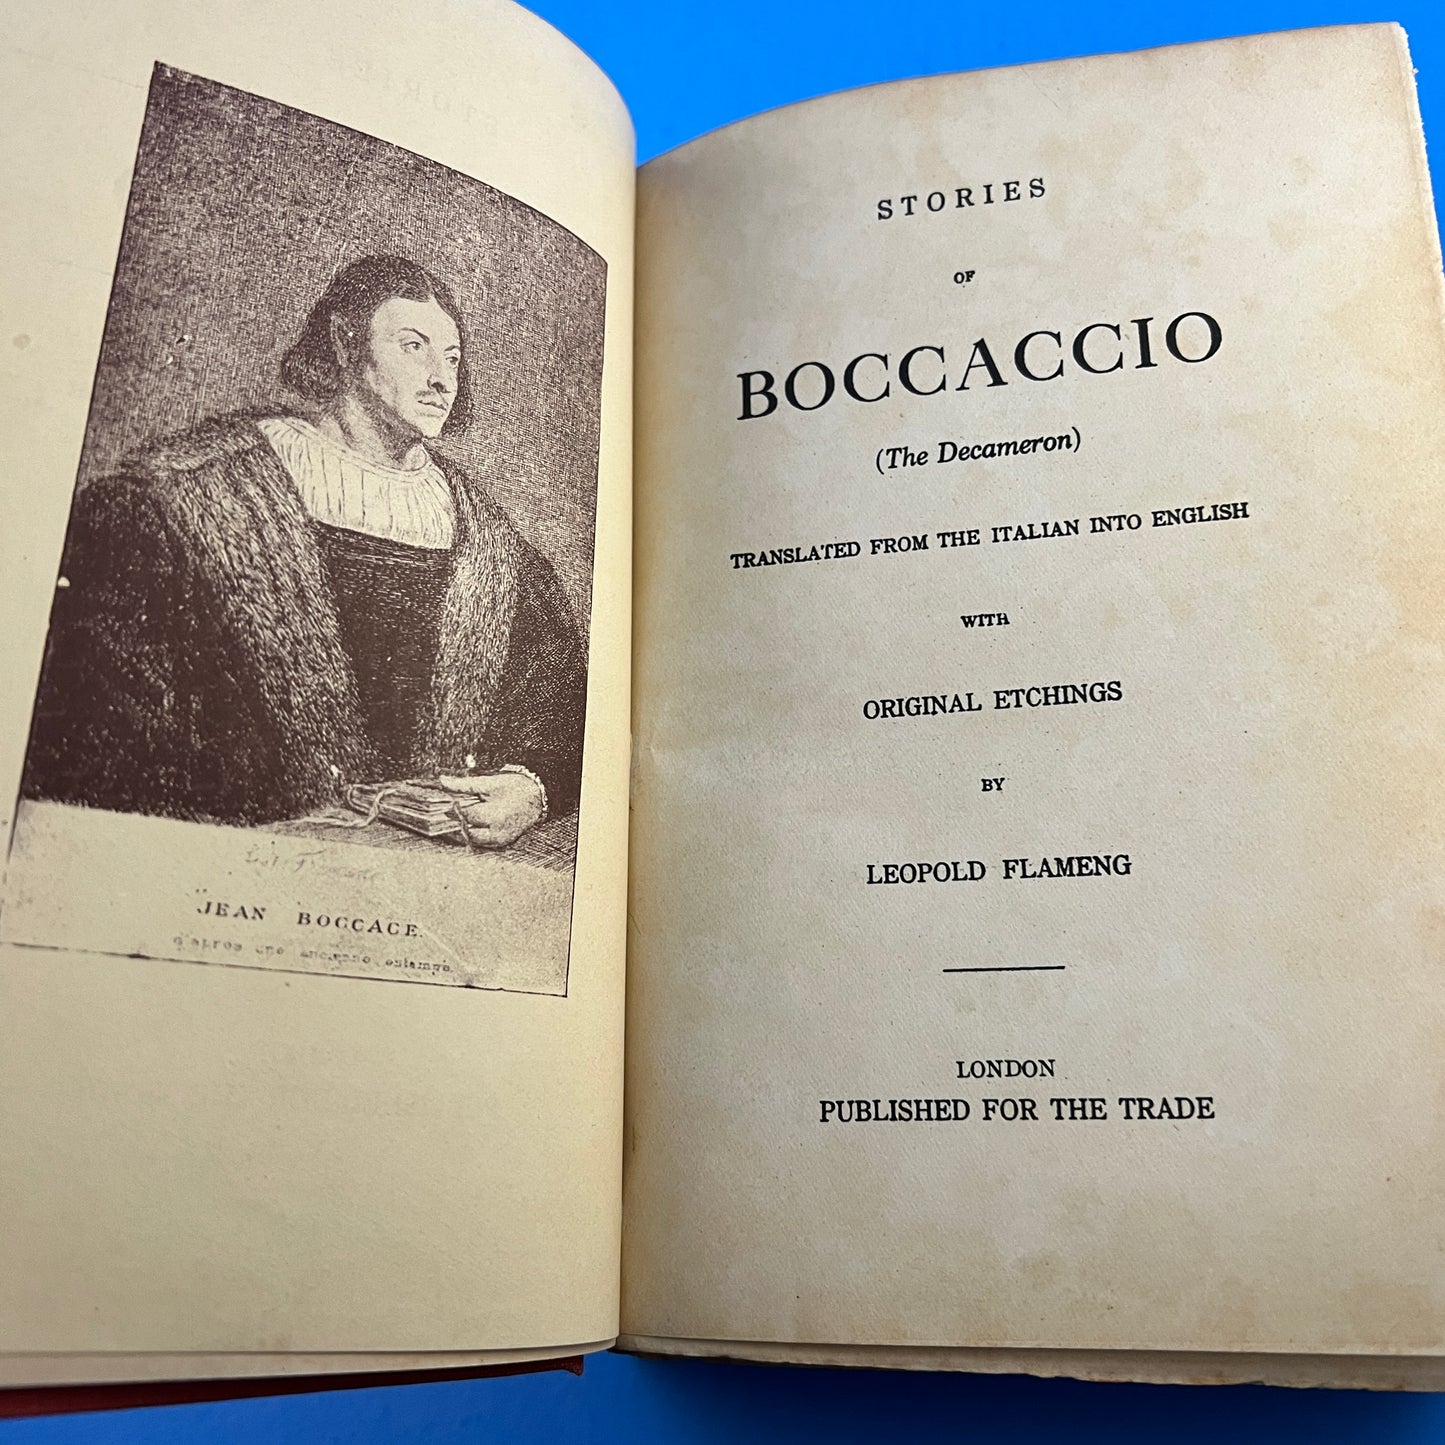 Stories of Boccaccio (The Decameron)